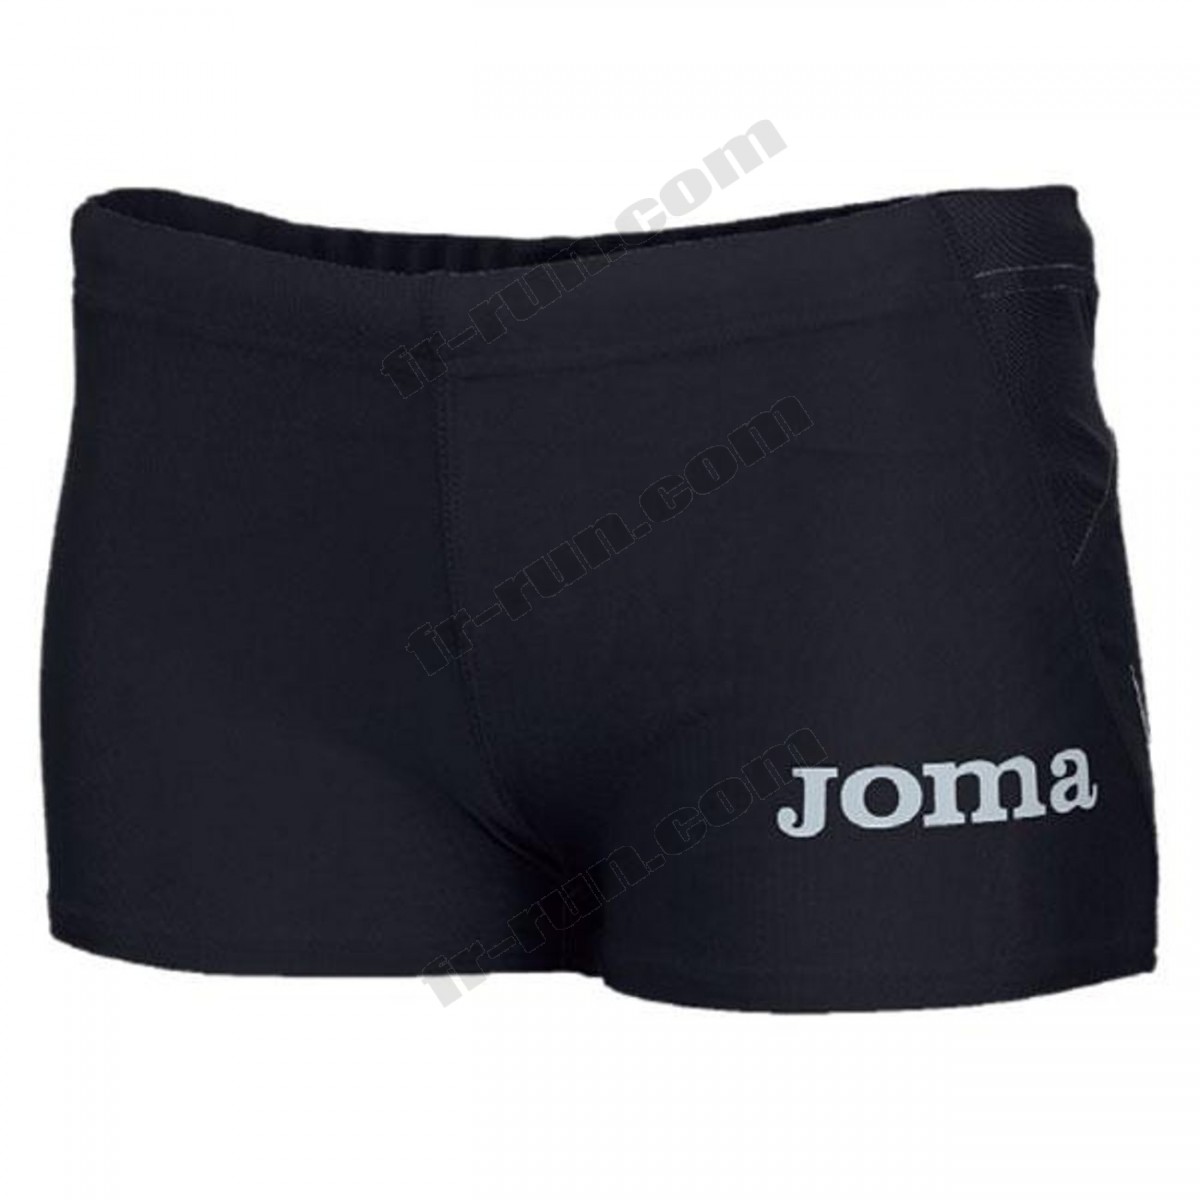 Joma/running femme JOMA Joma Elite Ii Shorts ◇◇◇ Pas Cher Du Tout - Joma/running femme JOMA Joma Elite Ii Shorts ◇◇◇ Pas Cher Du Tout